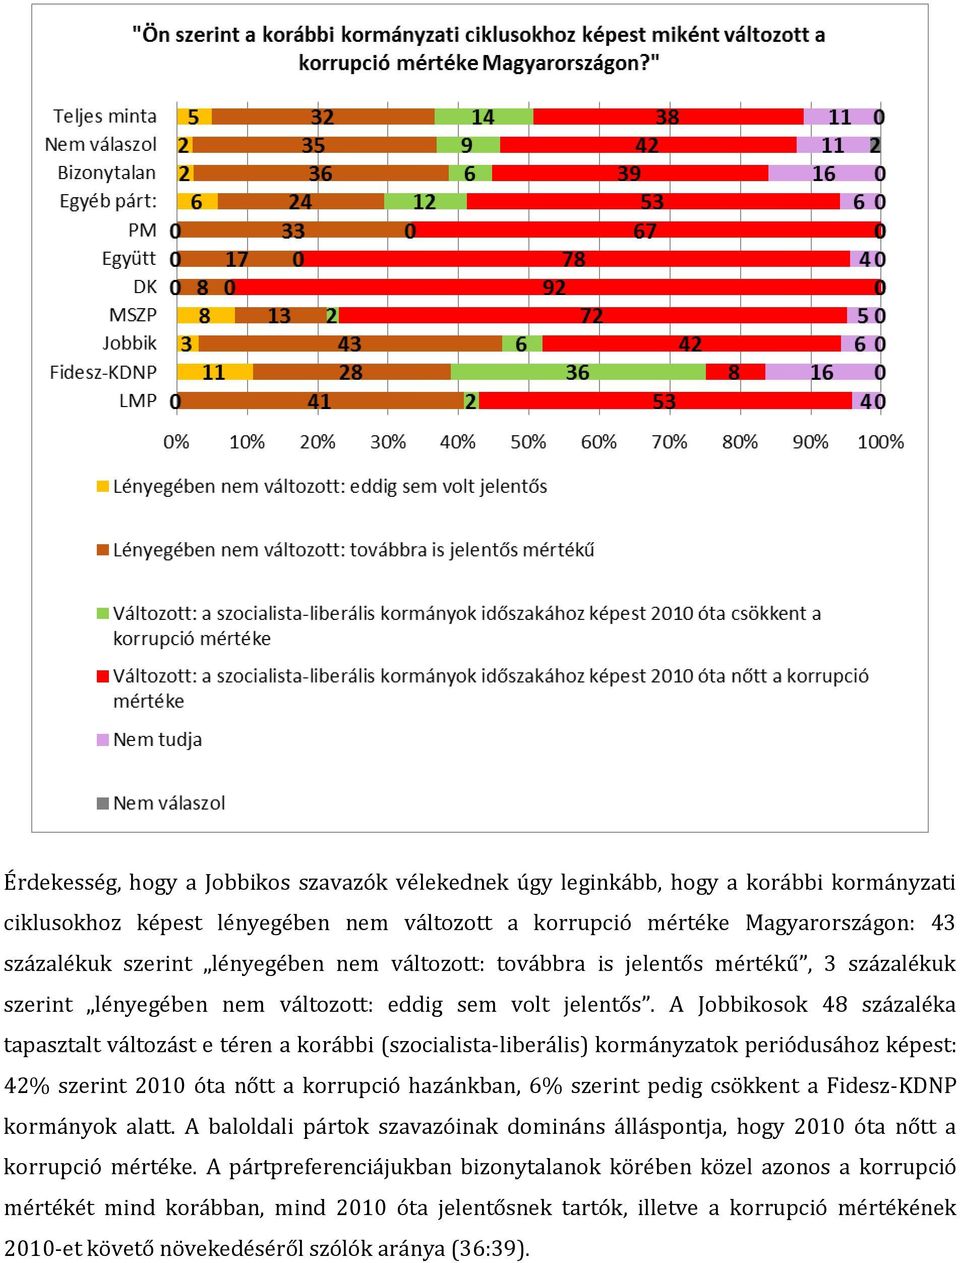 A Jobbikosok 48 százaléka tapasztalt változást e téren a korábbi (szocialista-liberális) kormányzatok periódusához képest: 42% szerint 2010 óta nőtt a korrupció hazánkban, 6% szerint pedig csökkent a